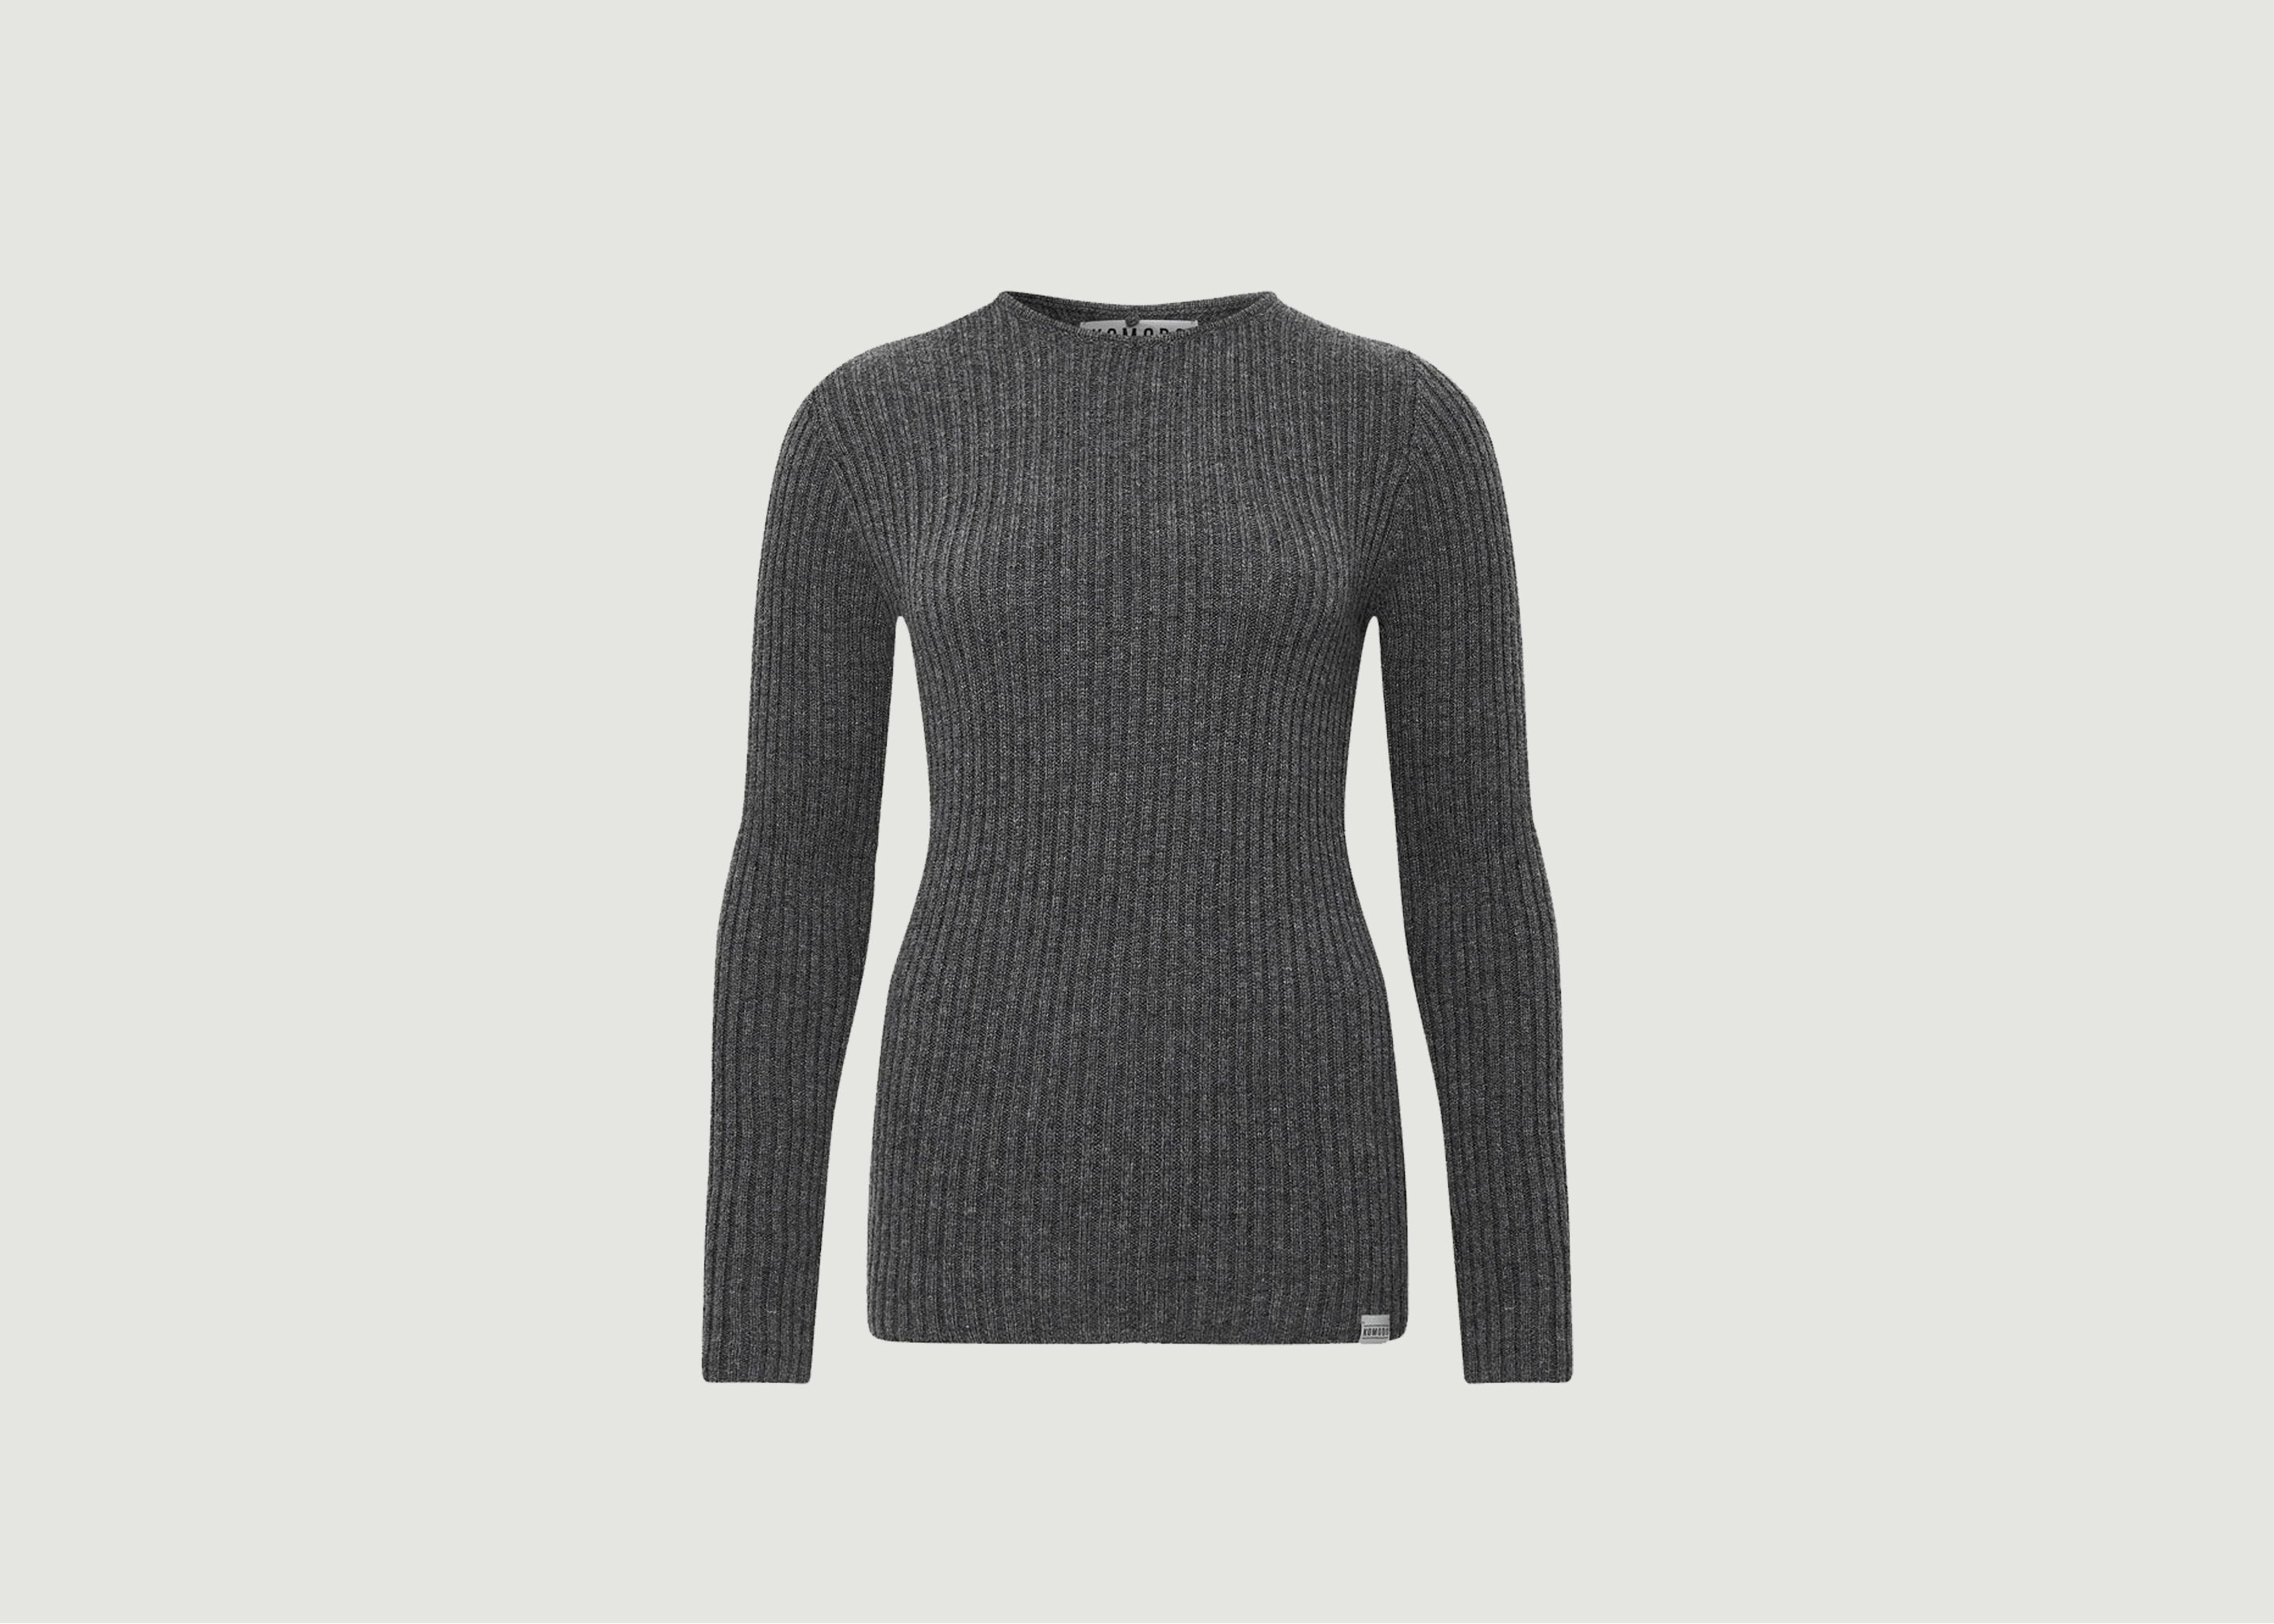 Mimi cashmere sweater - komodo